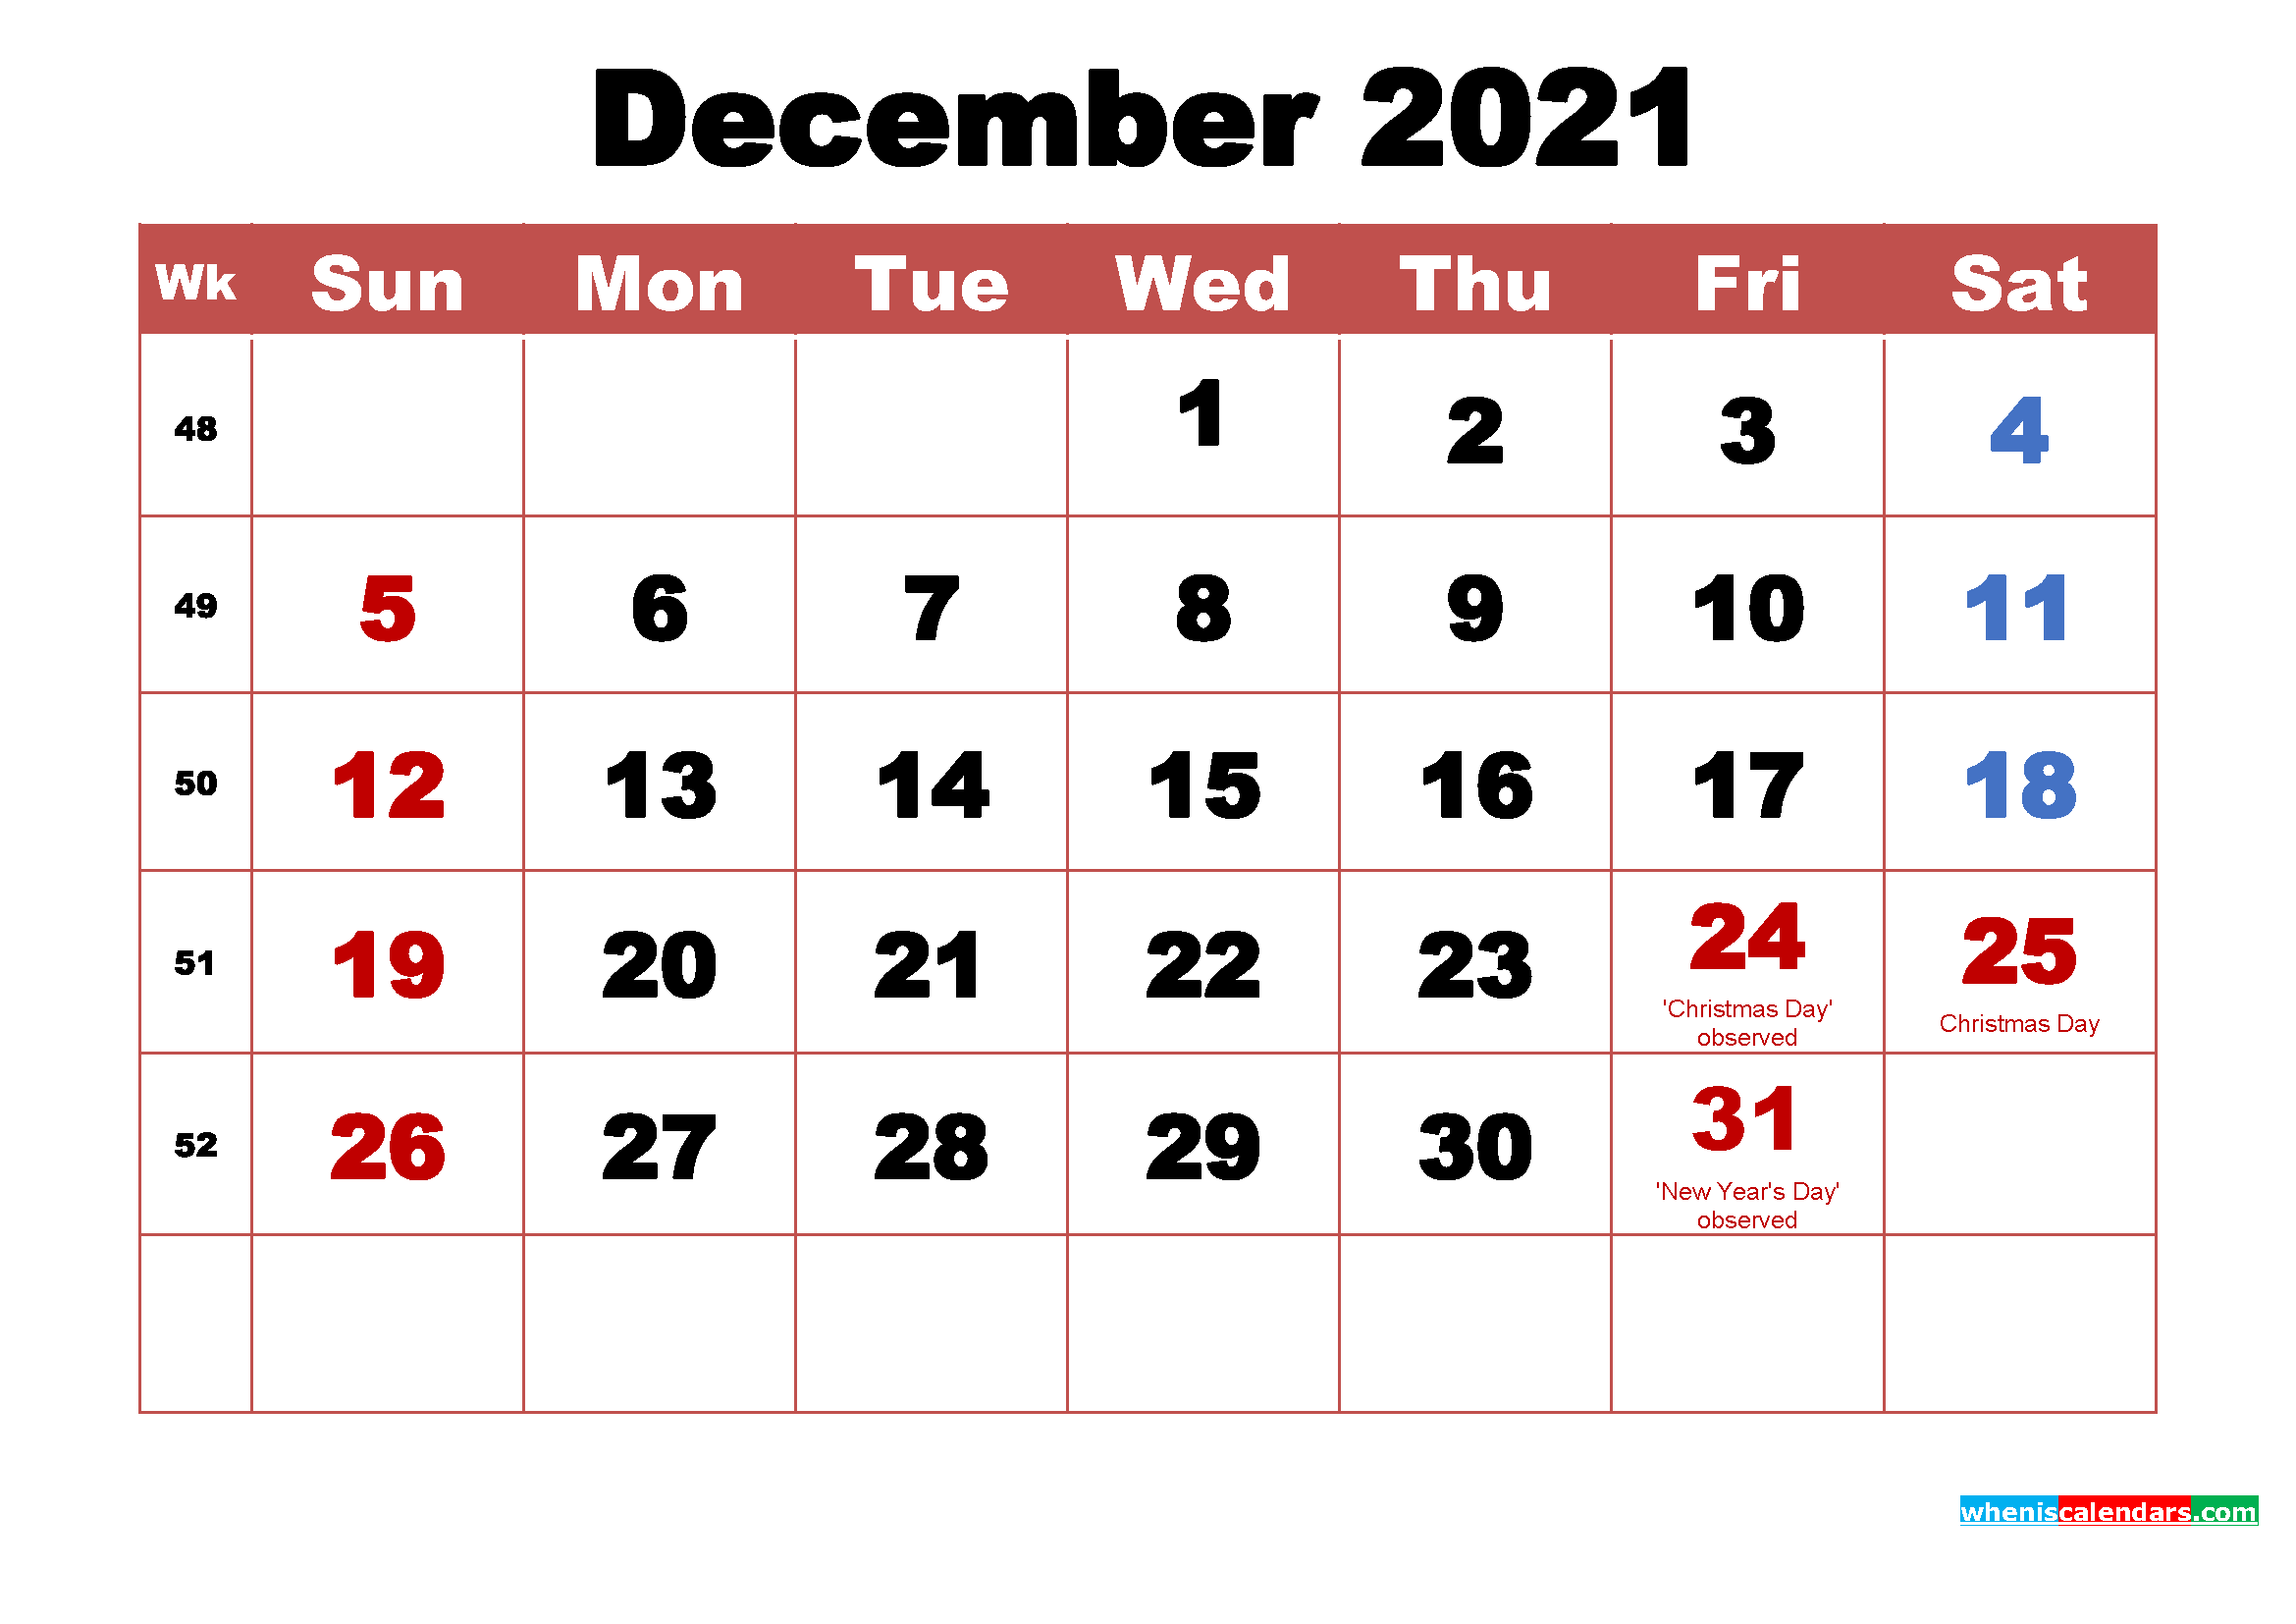 3 december 2021 holiday